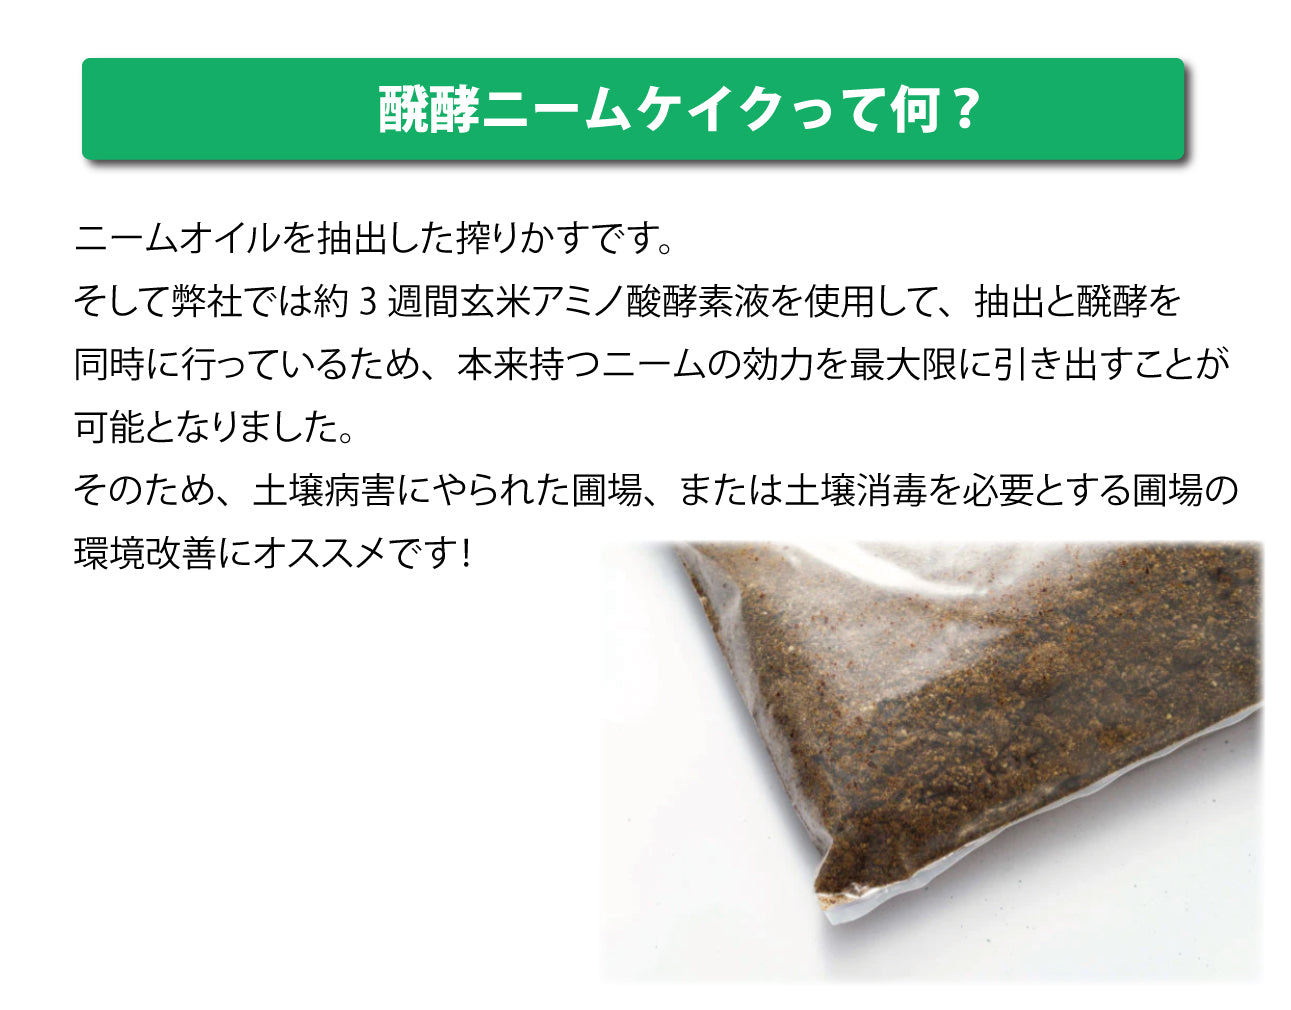 玄米アミノ酸醗酵ニームケイク 3kg